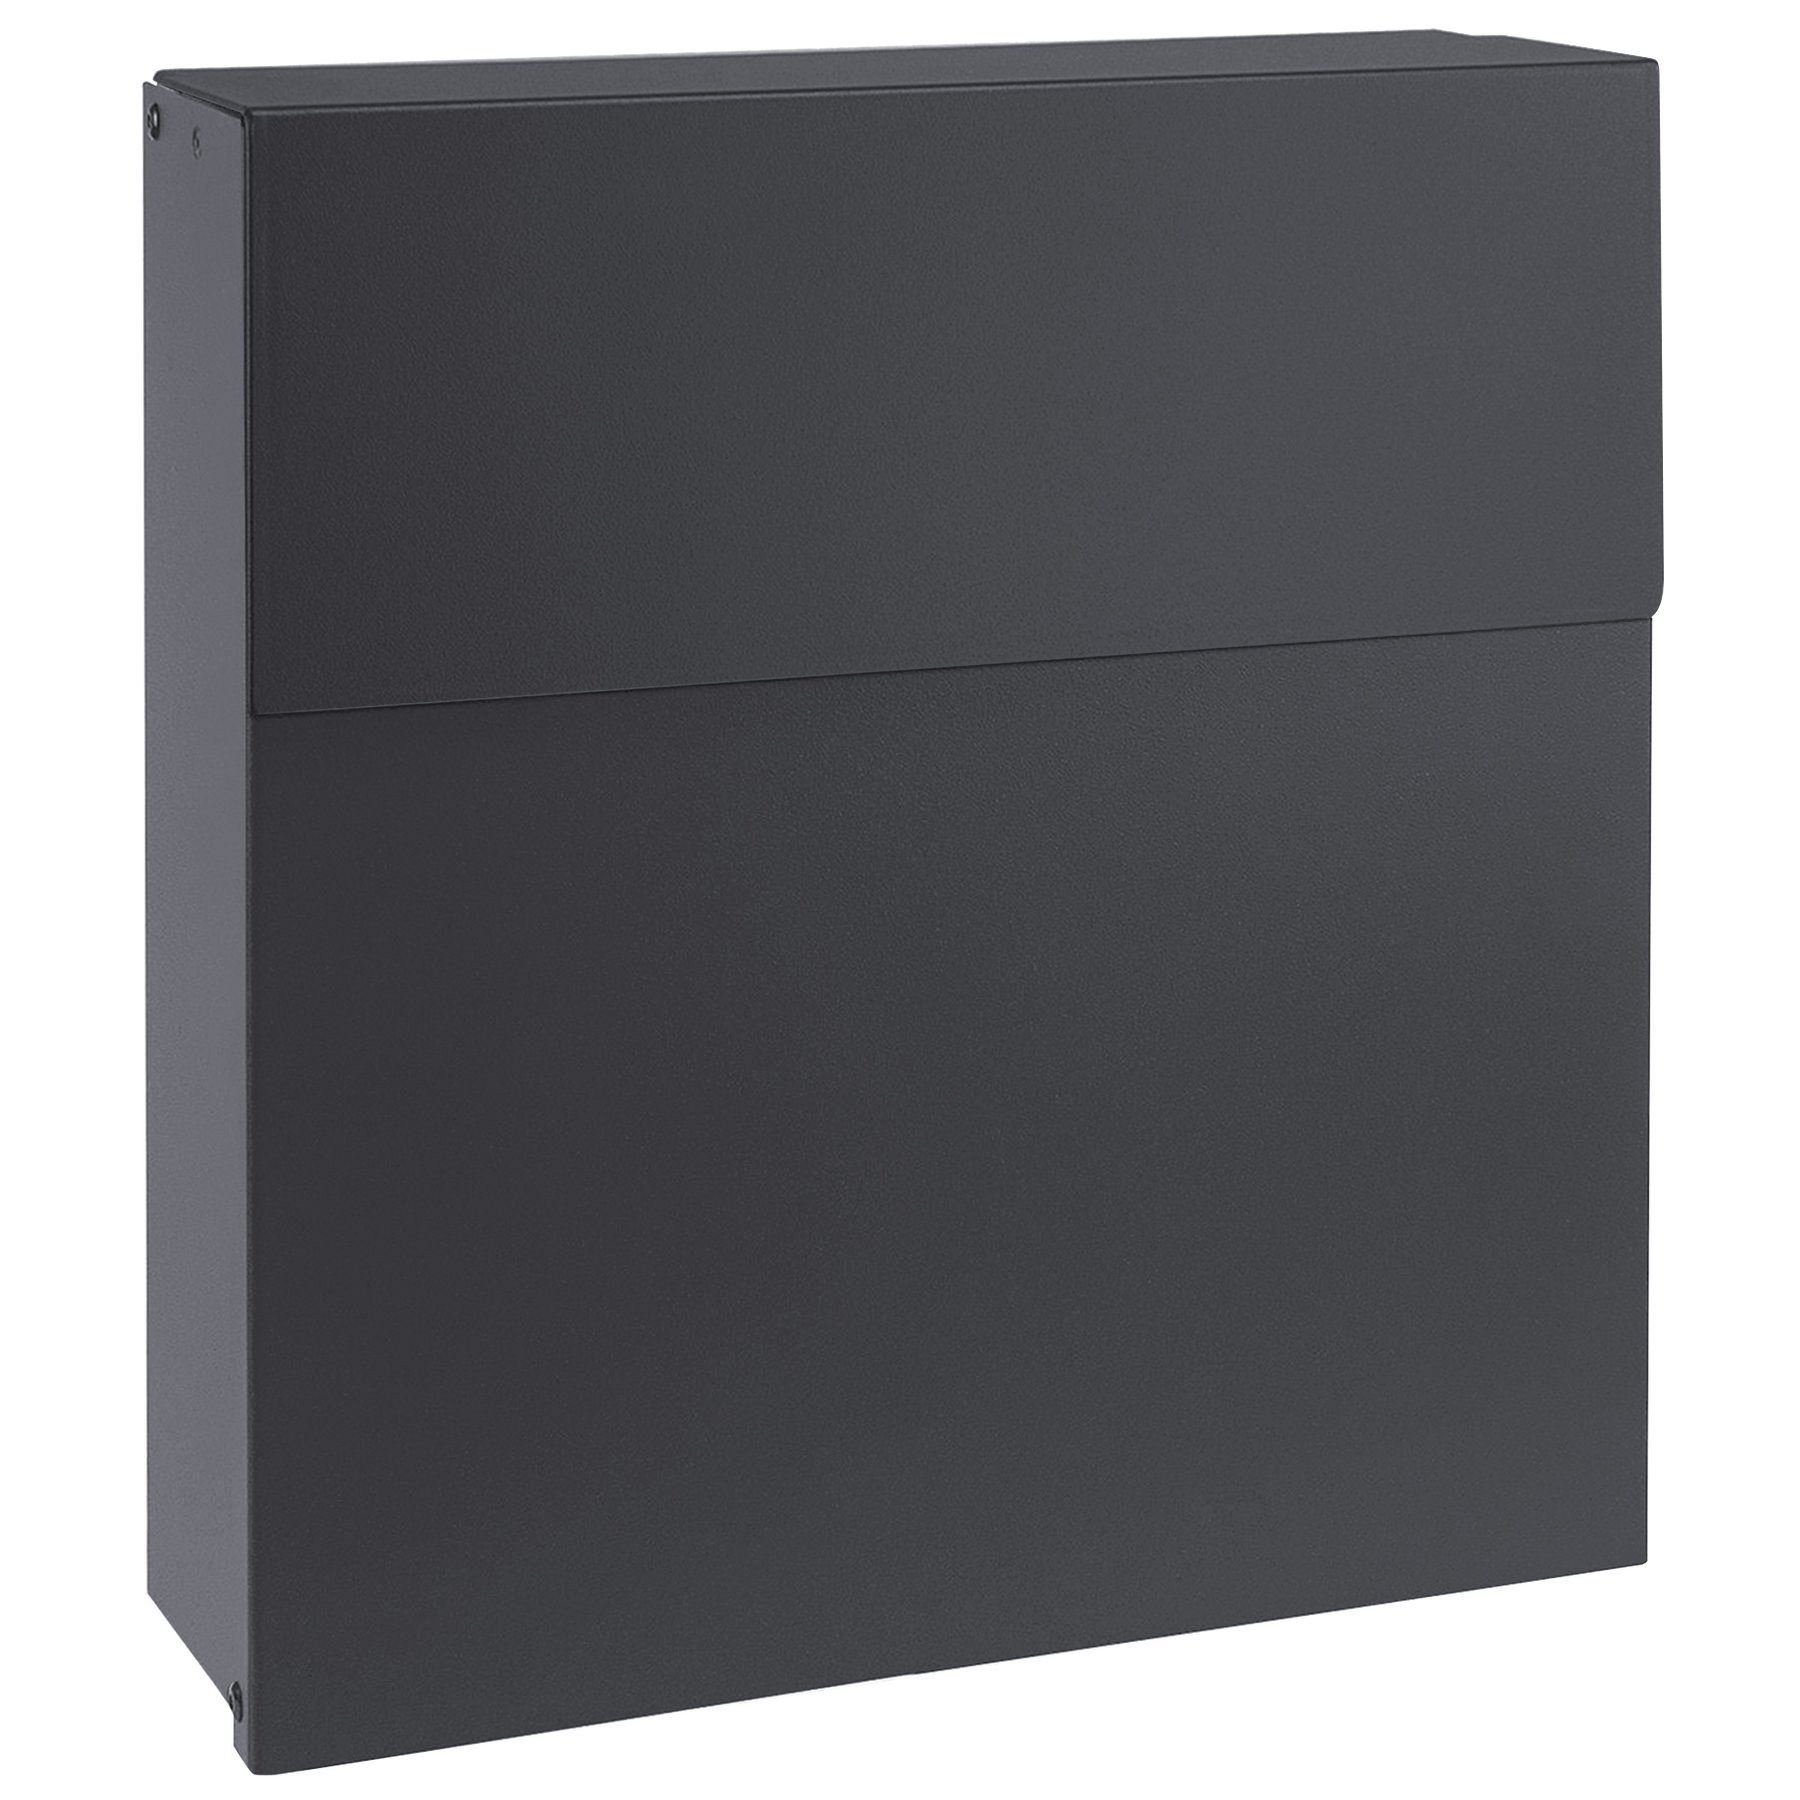 MOCAVI Briefkasten MOCAVI Box 570 Design-Briefkasten anthrazit (RAL 7016) | Briefkästen